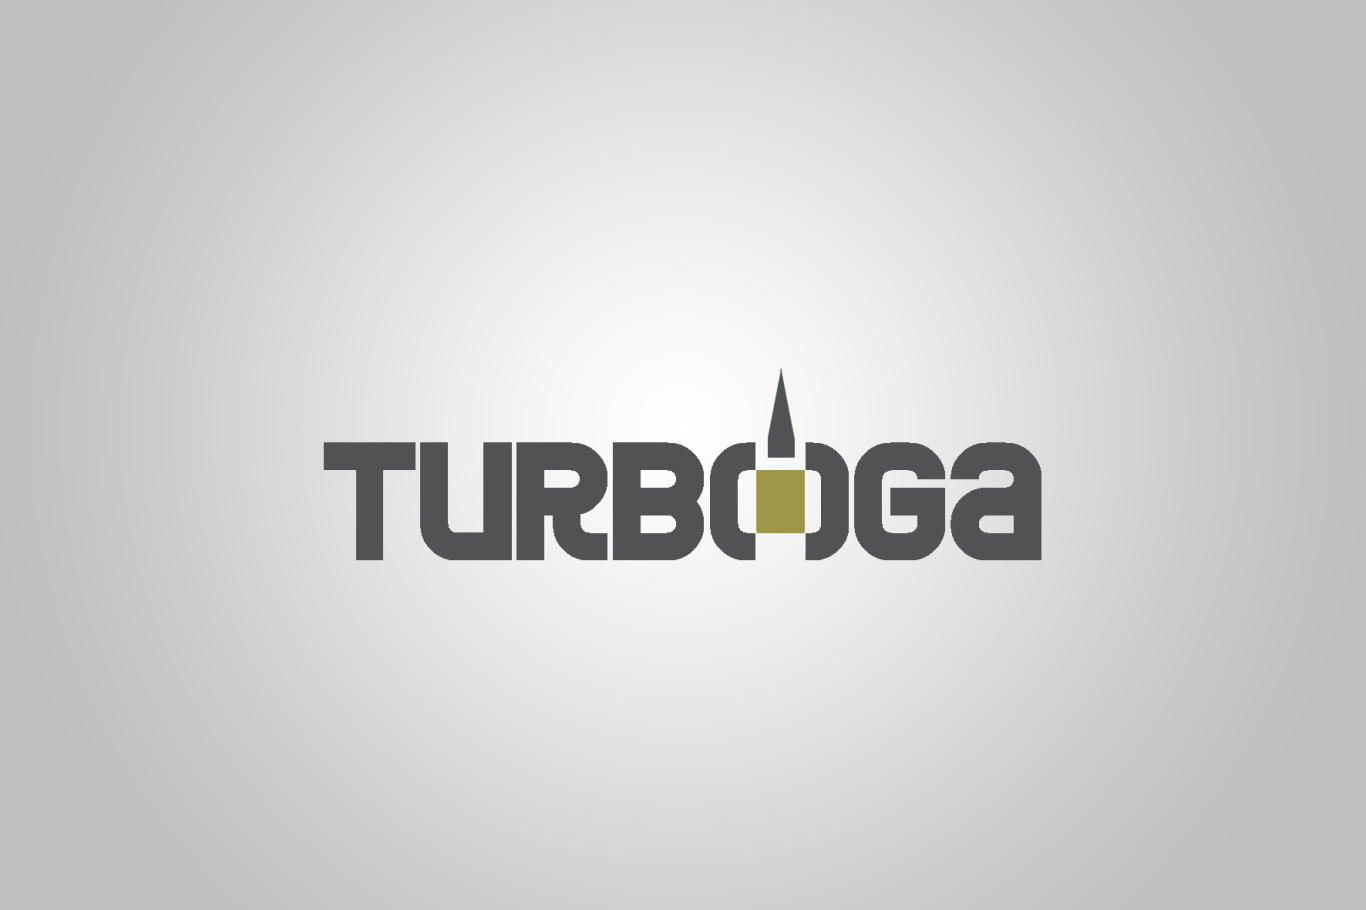 TURBOGA商标设计LOGO设计应用图8